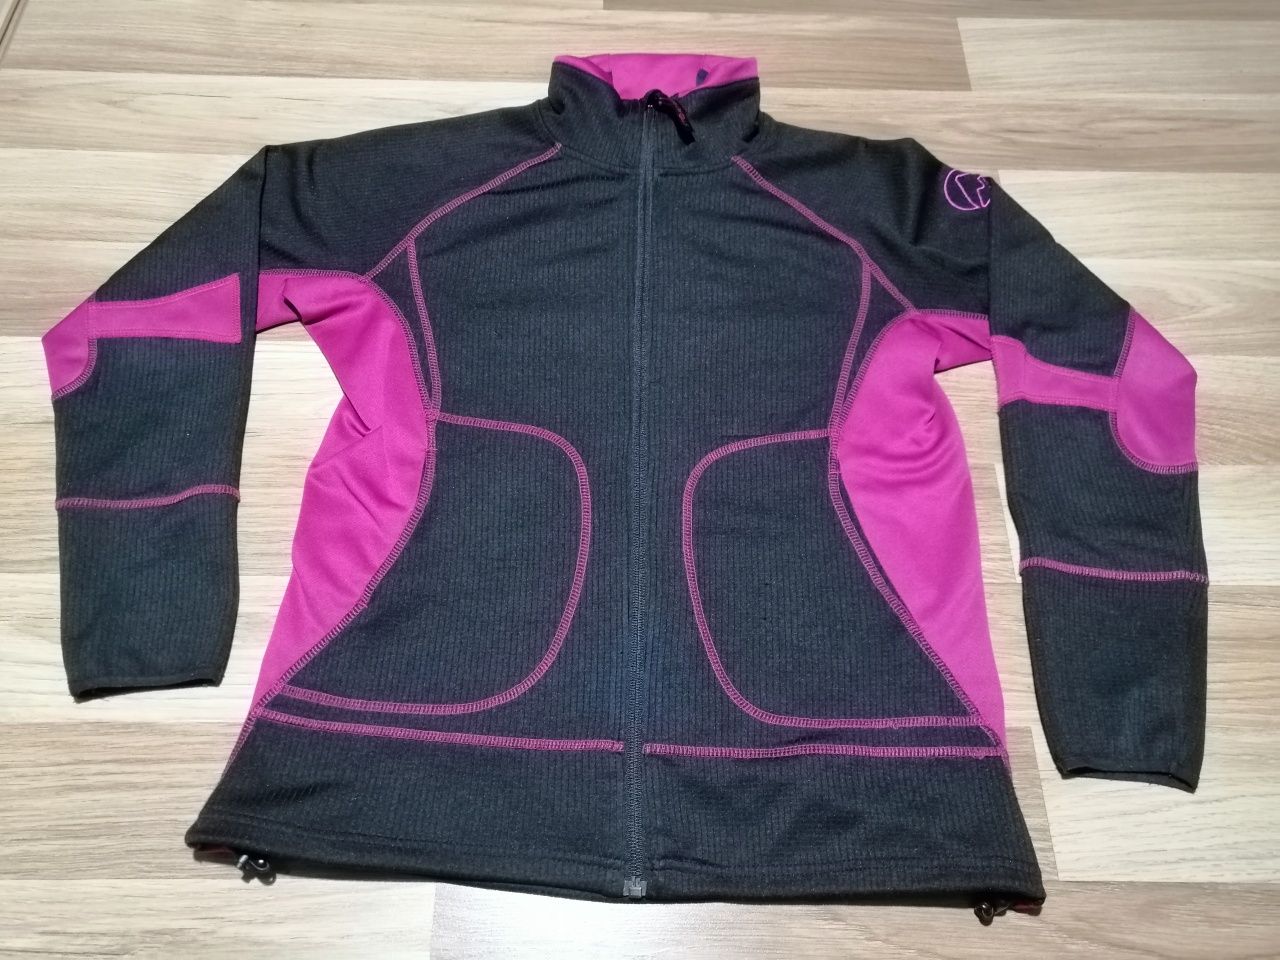 Stormberg bluza sportowa rozsuwana do biegania na rower rozmiar M